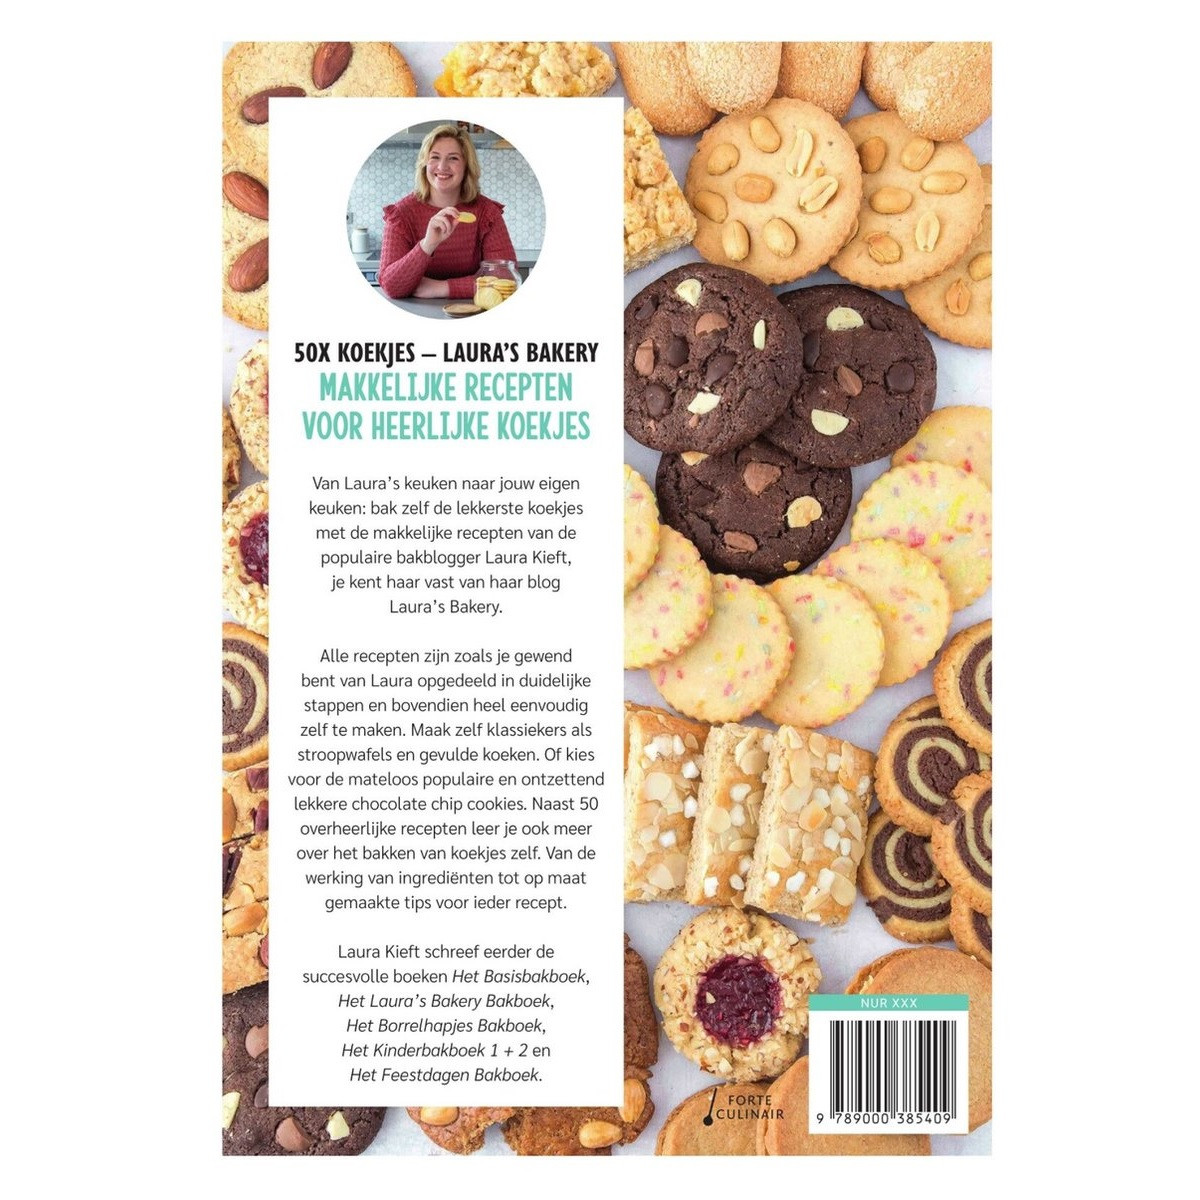 Book: 50x Cookies - Laura's Bakery